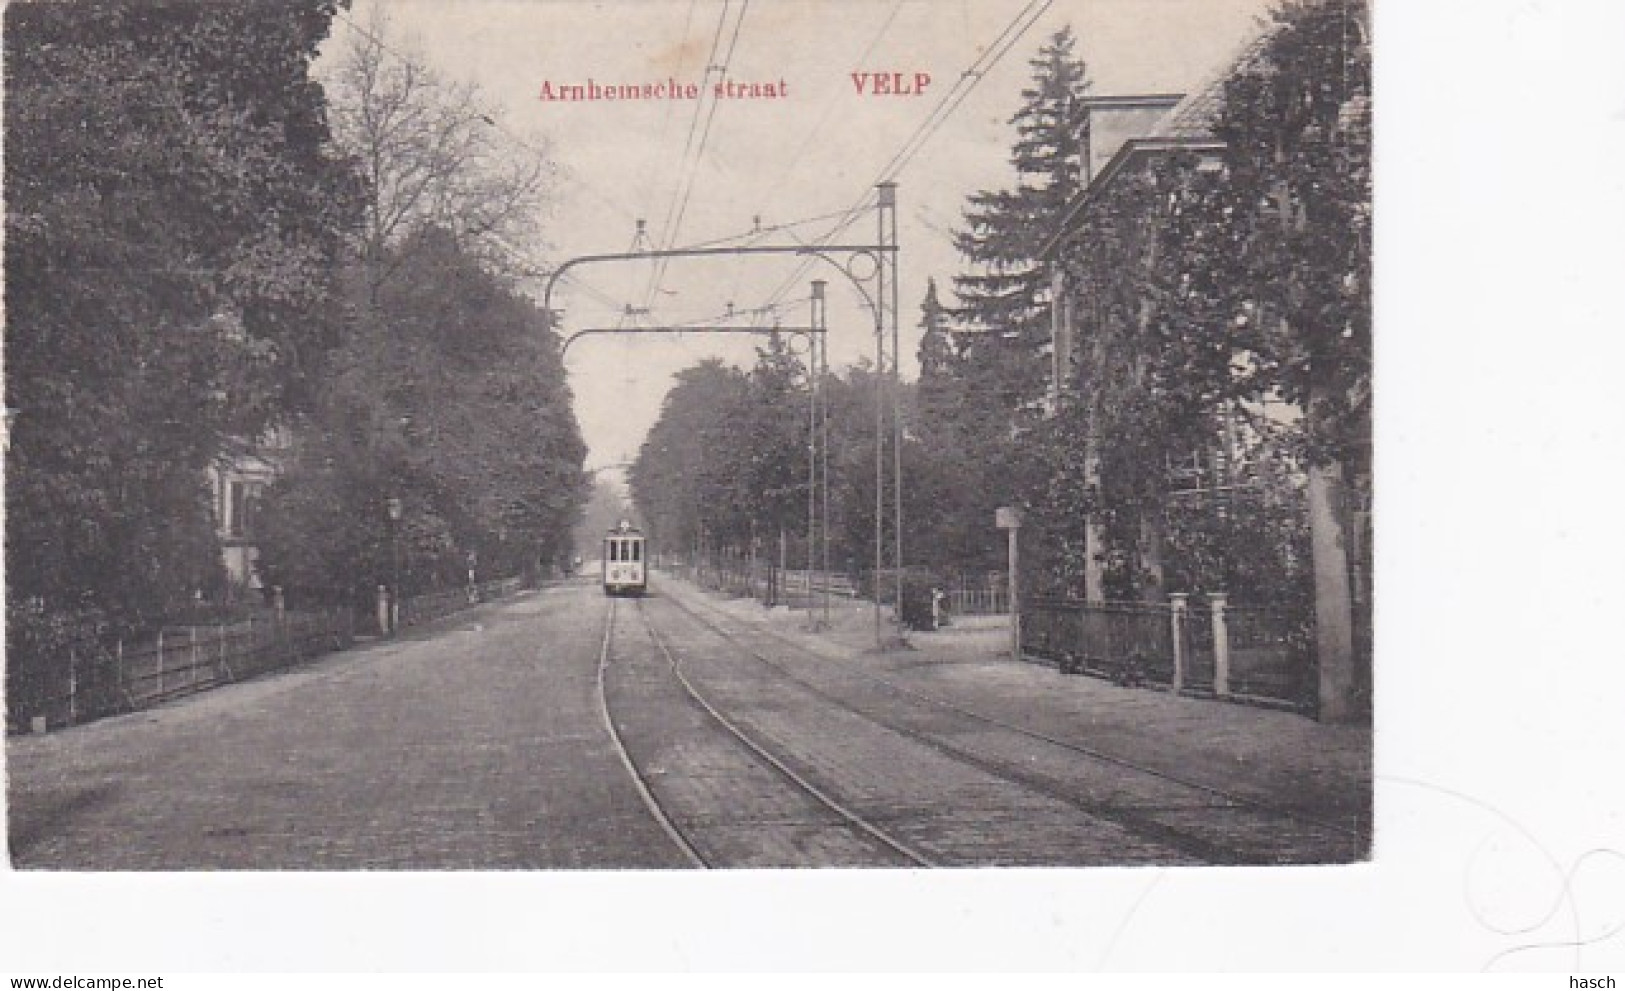 4843486Velp, Arnhemsche Straat.  - Velp / Rozendaal